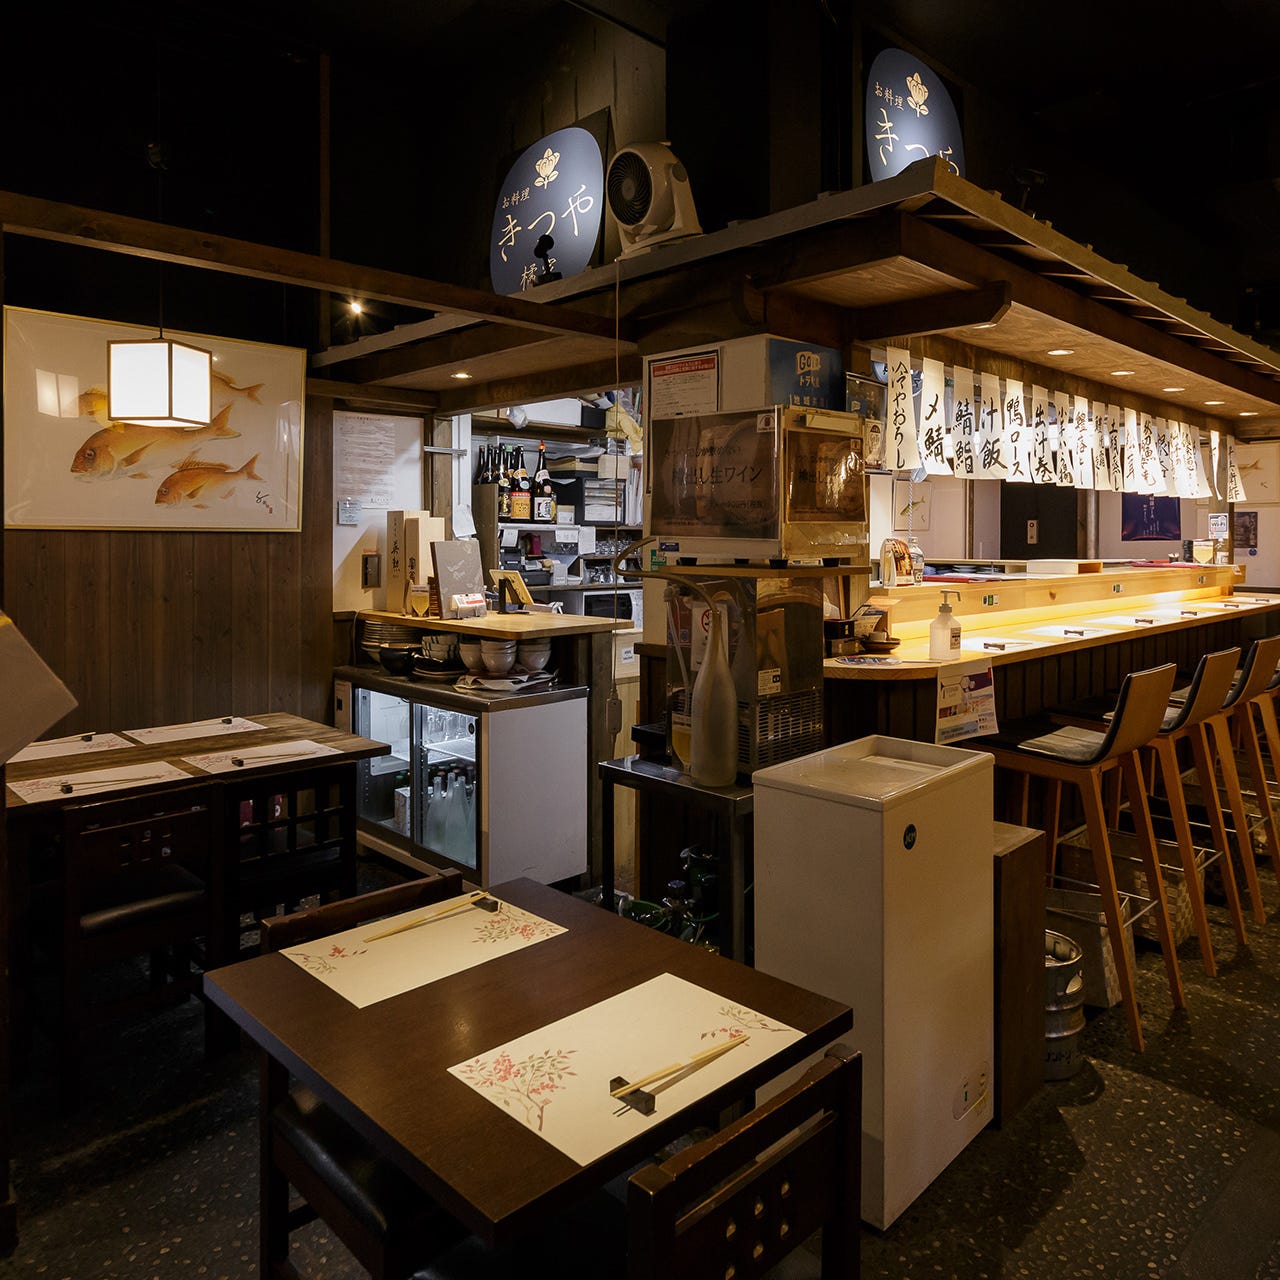 小料理と日本酒を気軽に楽しめる空間